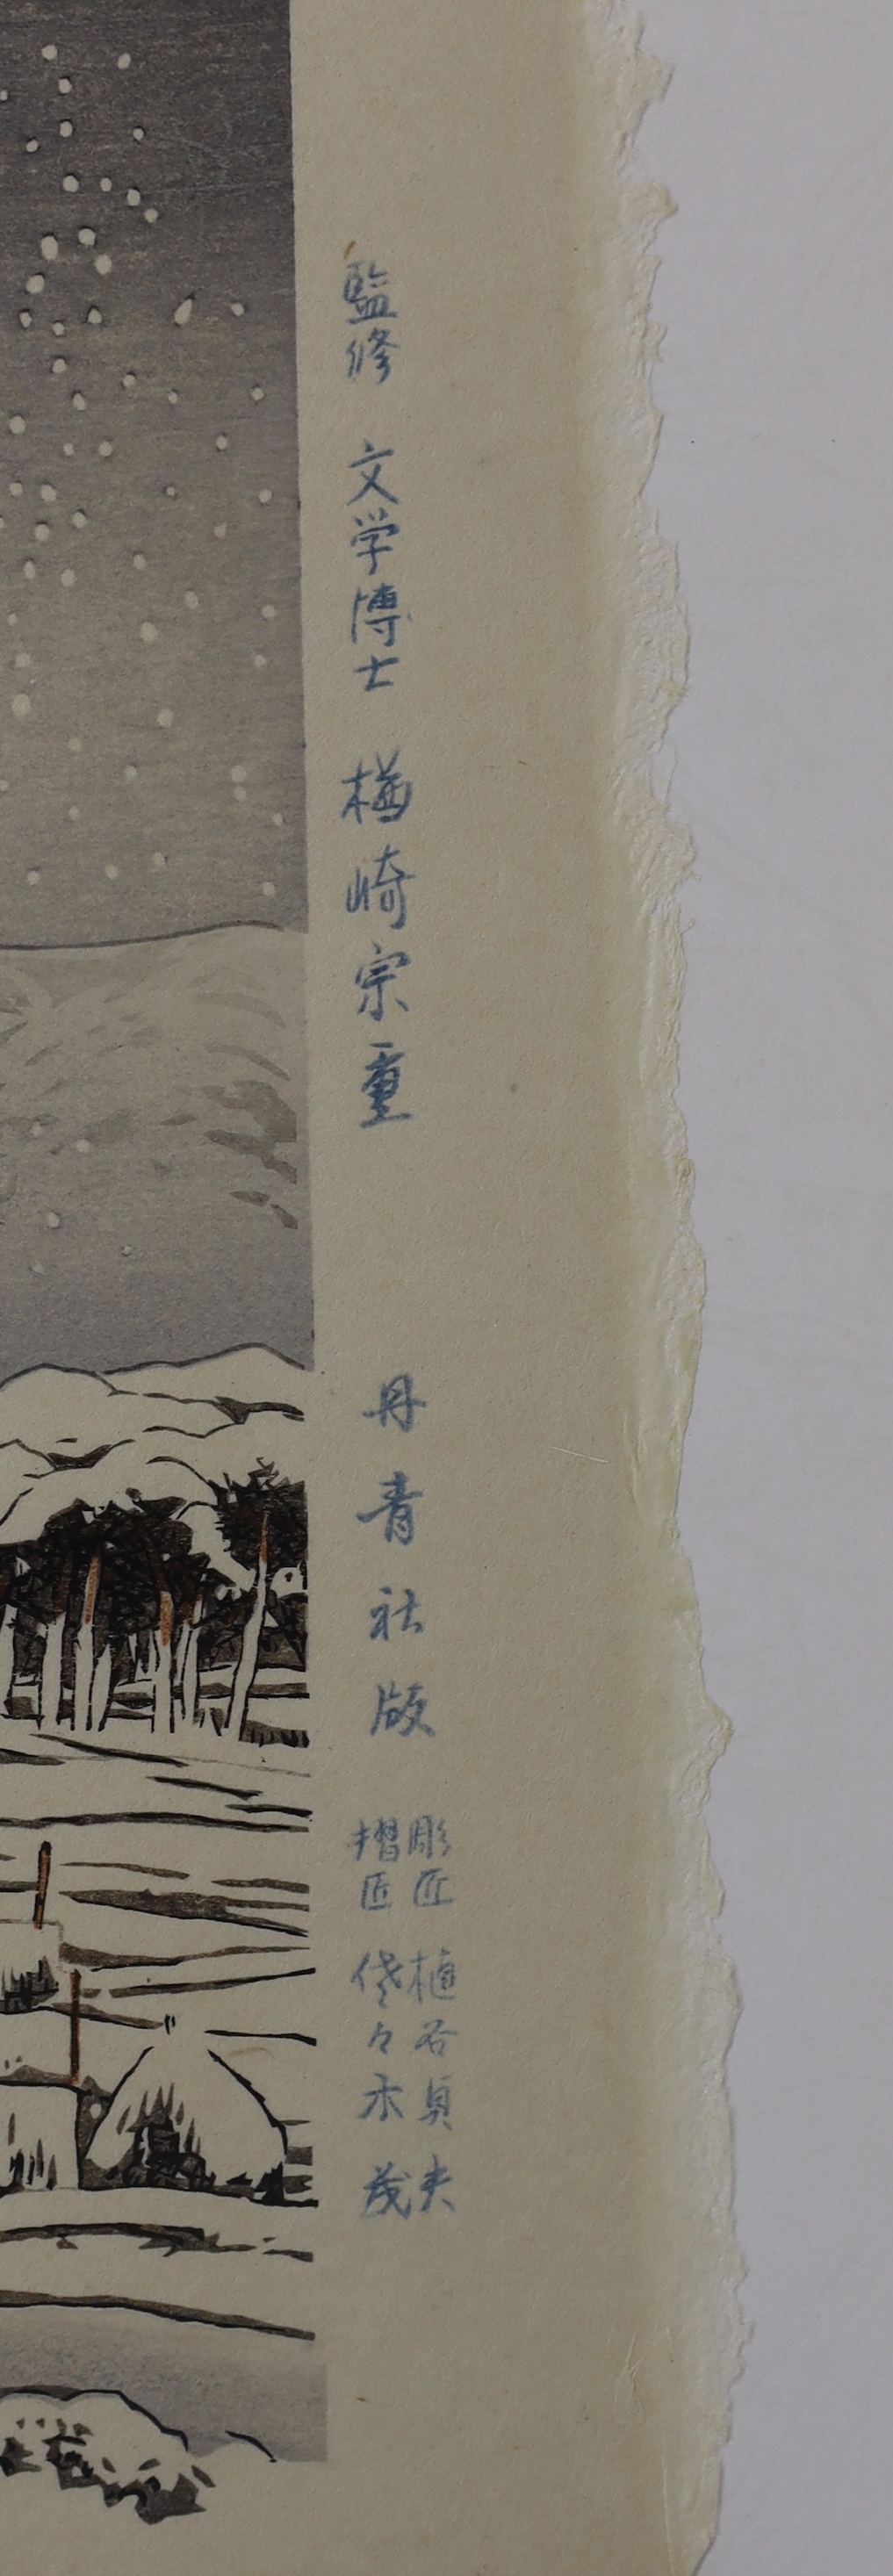 Hashiguchi Goyo (1880-1921), woodblock print, Snowy River, 1920, unframed, 53cm x 38cm